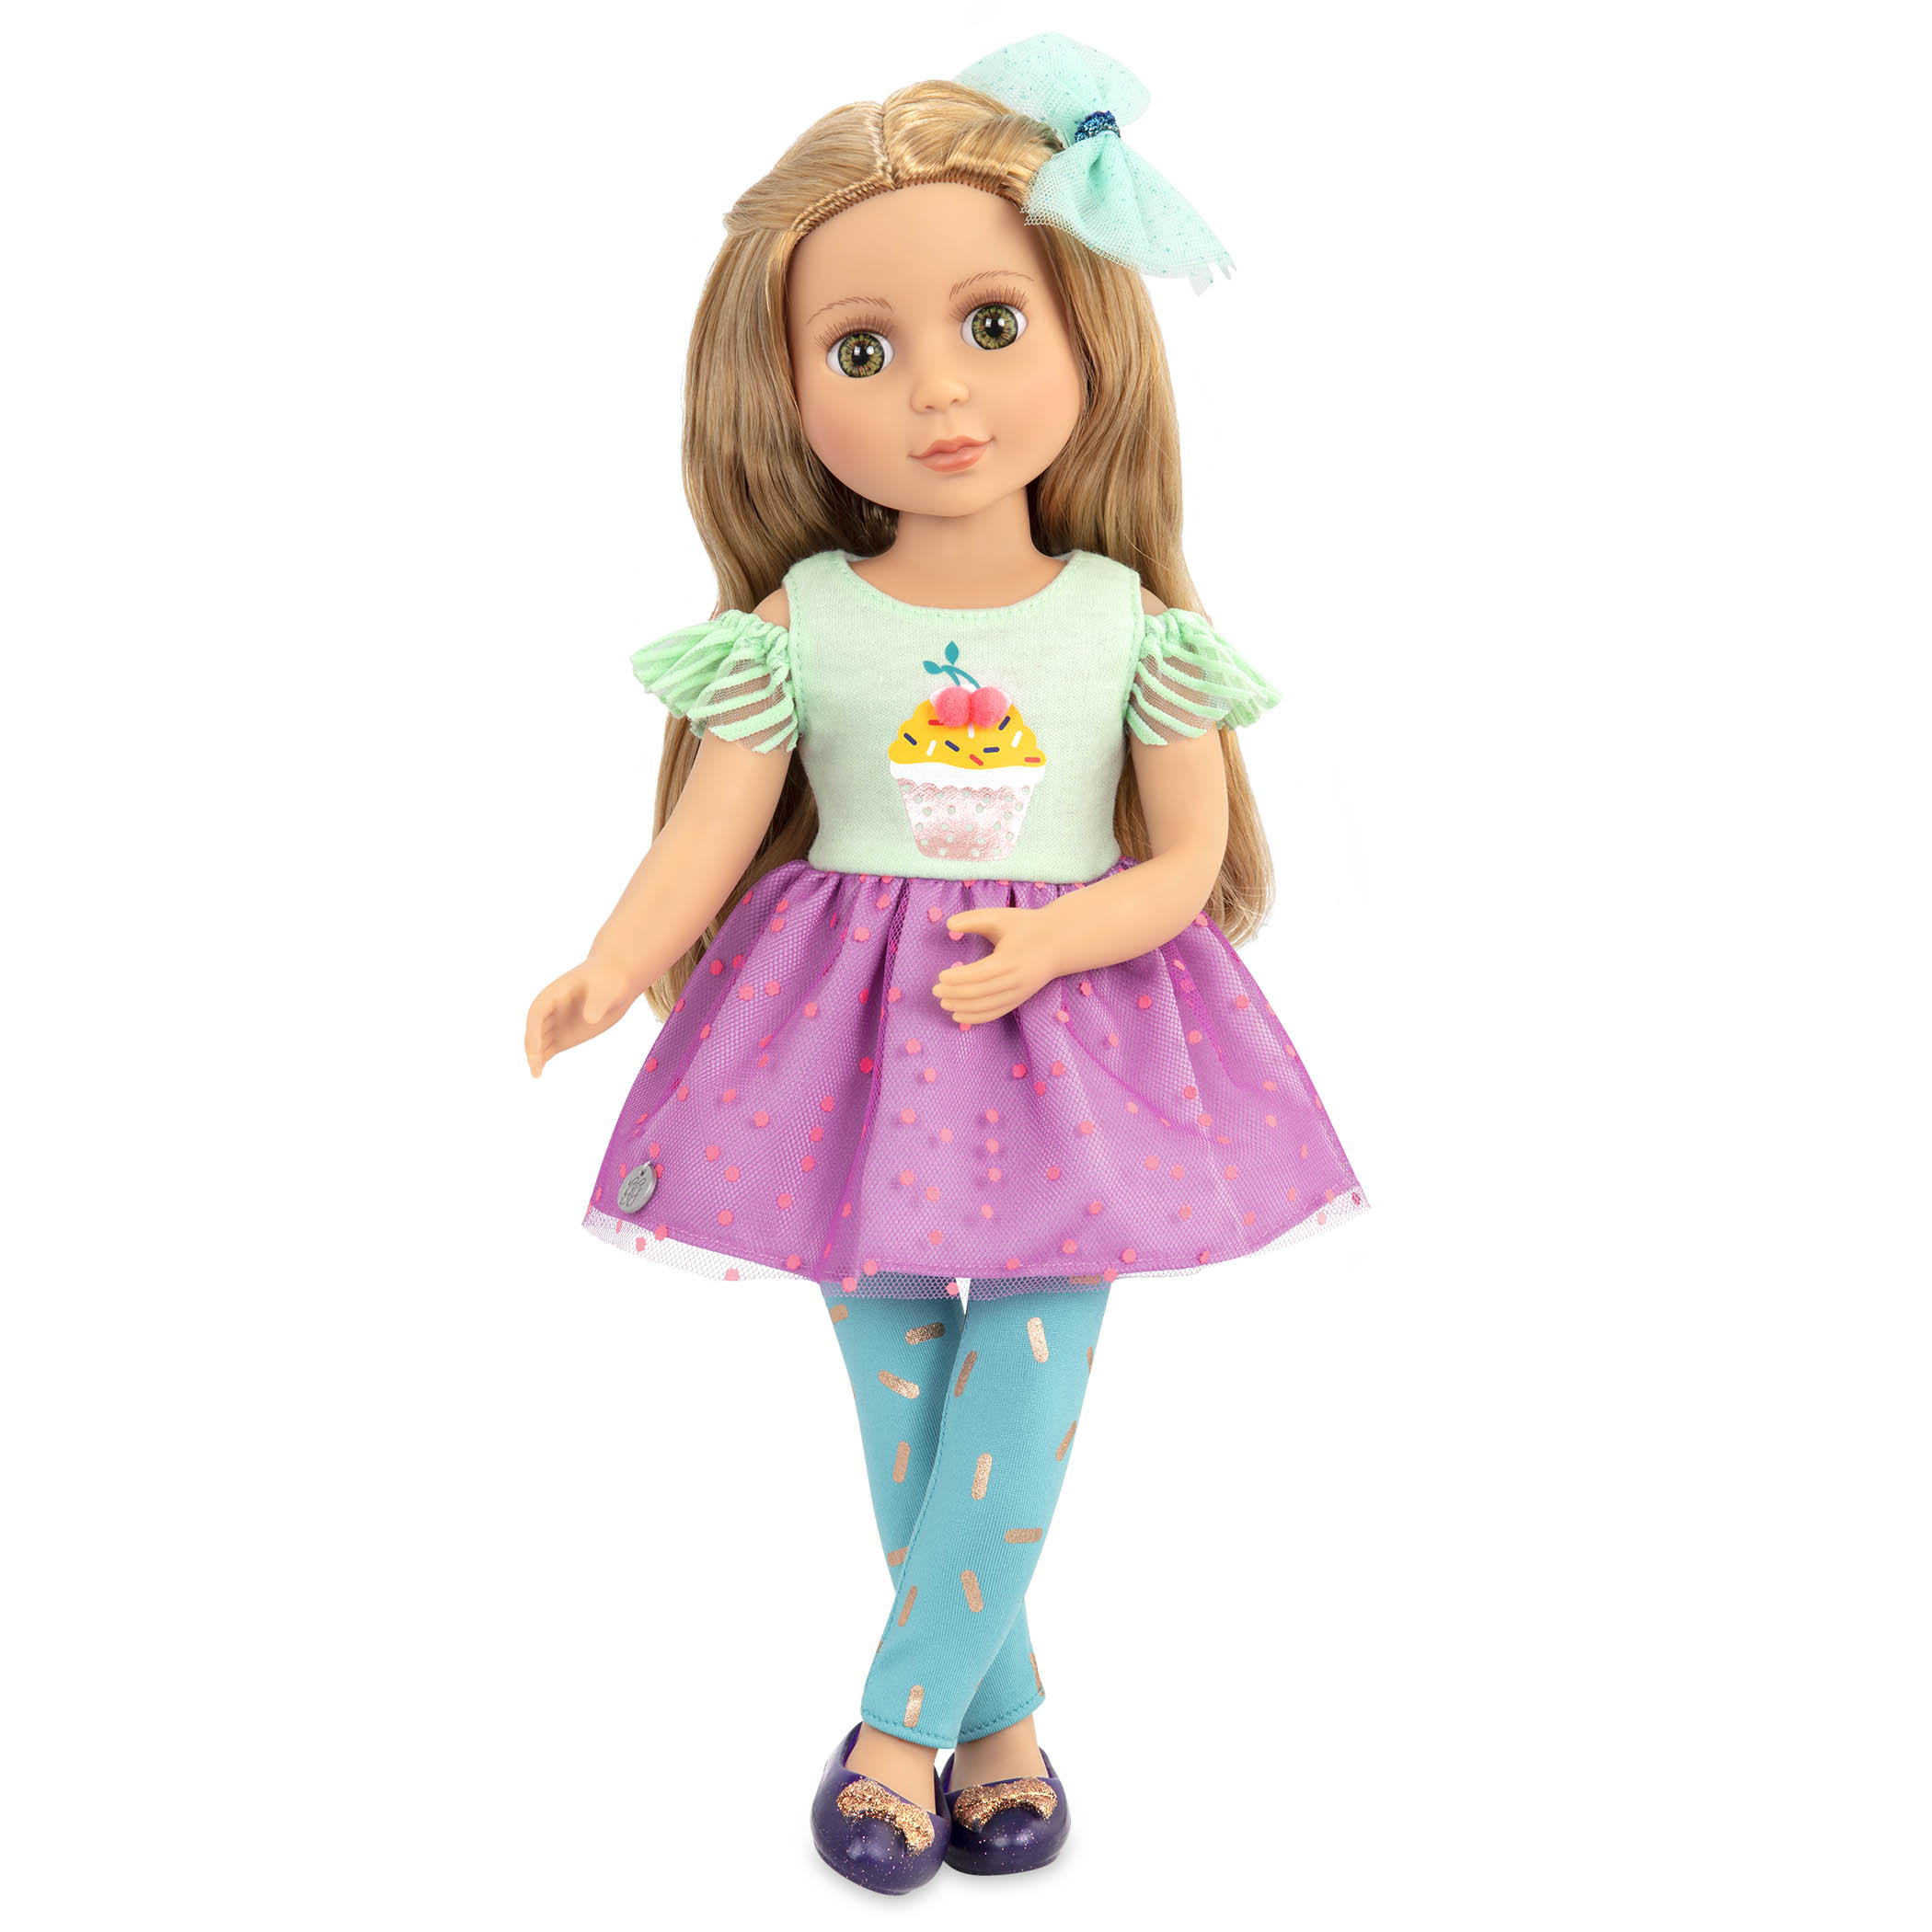 Glitter Girls Dolls by Battat – Emilia 14 Posable Fashion Doll